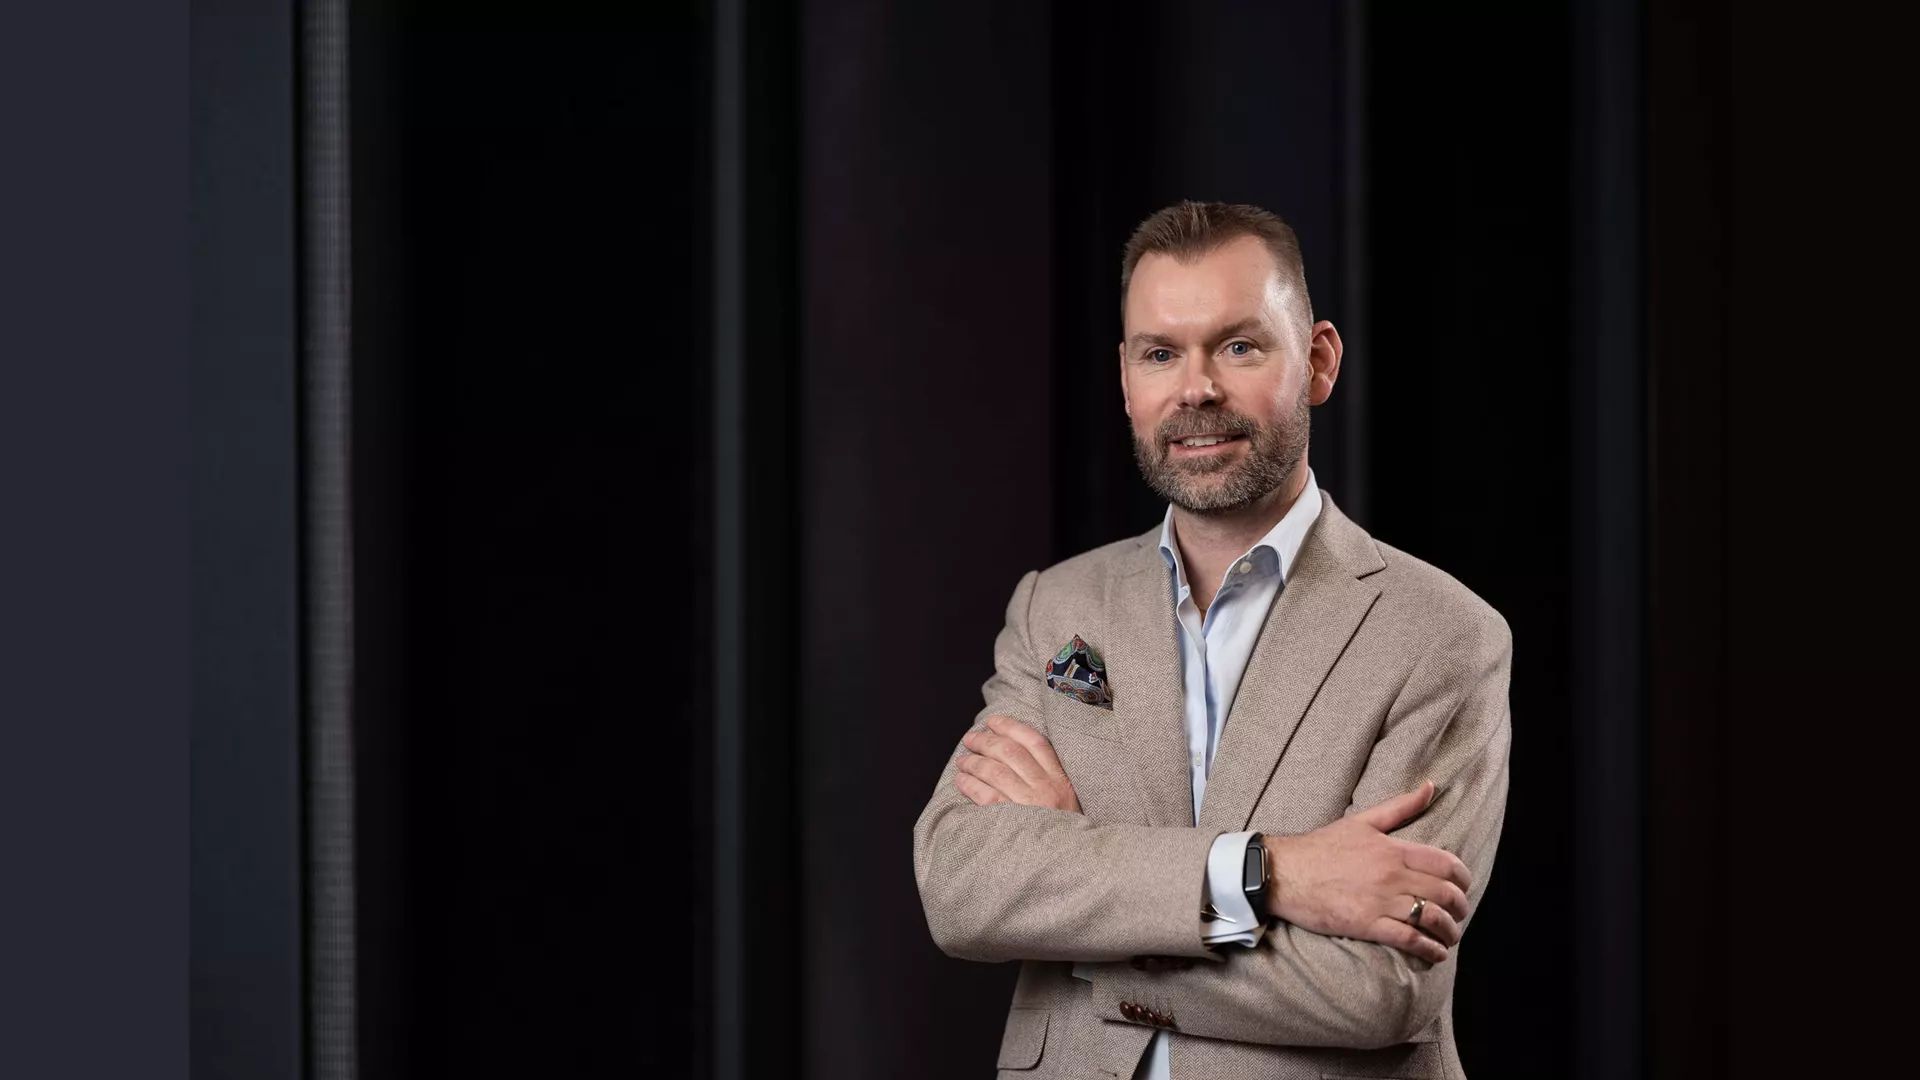 Kindred Group CEO Henrik Tjarnstrom